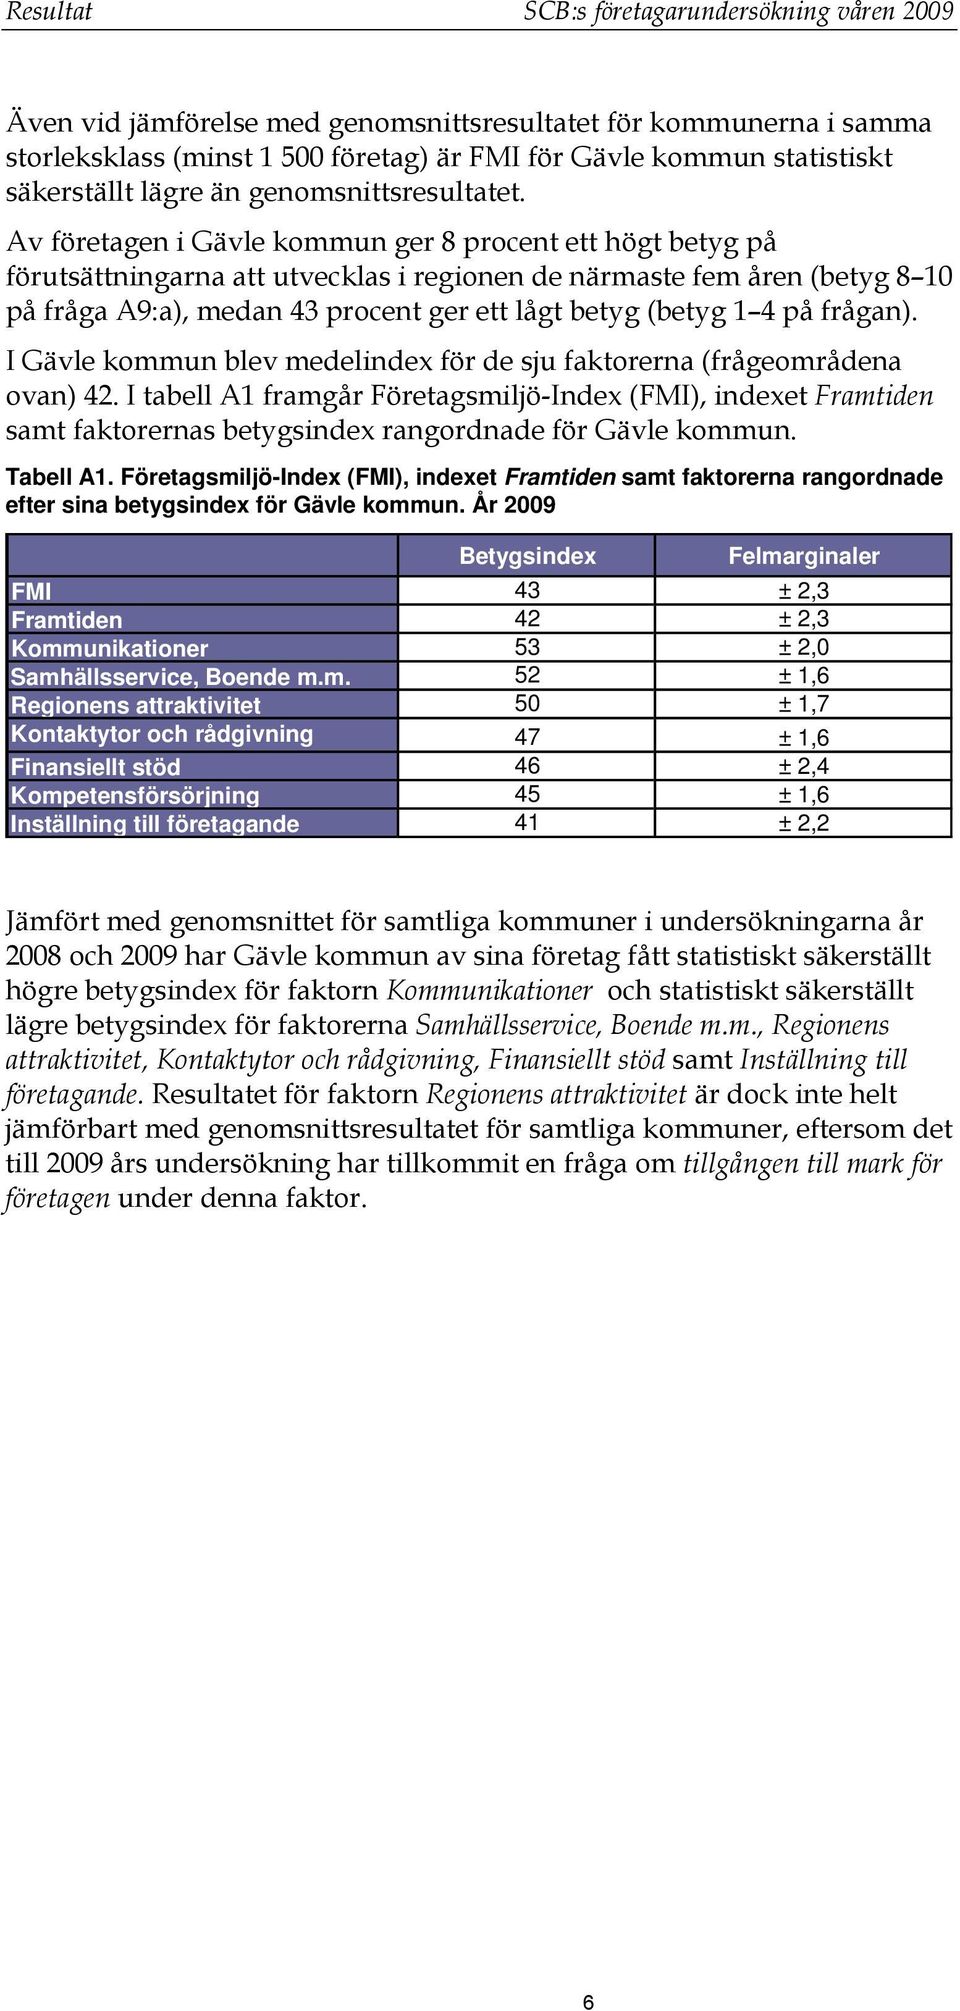 Av företagen i Gävle kommun ger 8 procent ett högt betyg på förutsättningarna att utvecklas i regionen de närmaste fem åren (betyg 8 10 på fråga A9:a), medan 43 procent ger ett lågt betyg (betyg 1 4